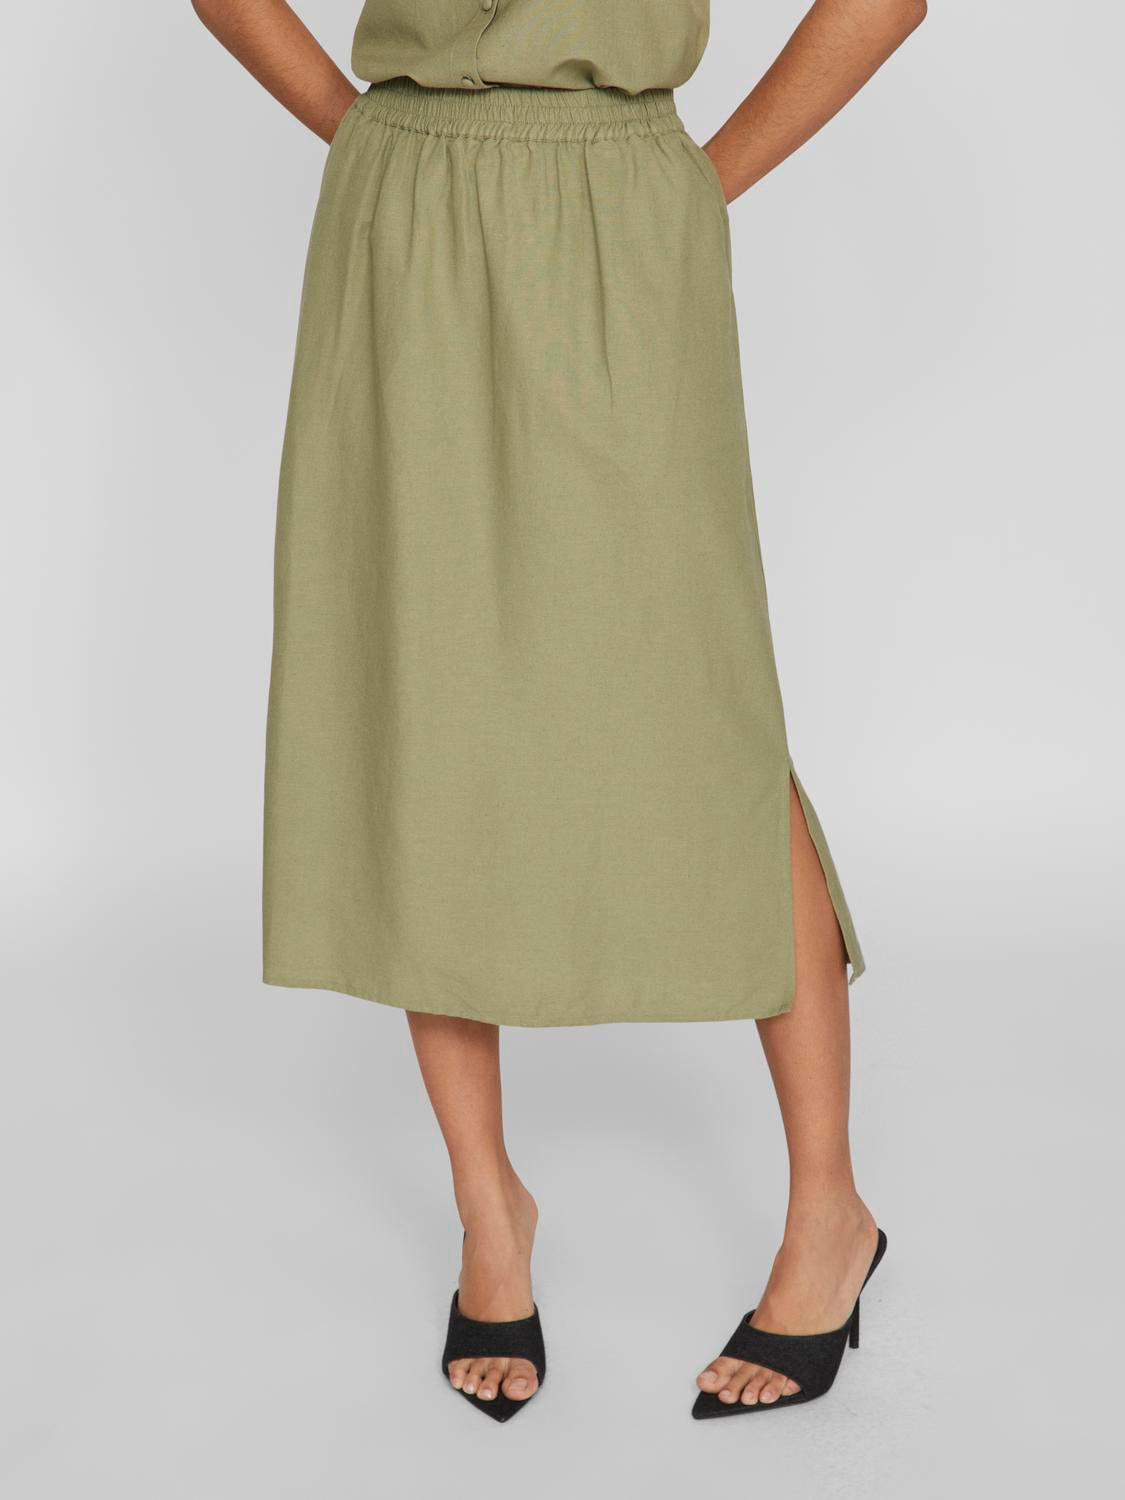 Linen A Line Skirt Khaki